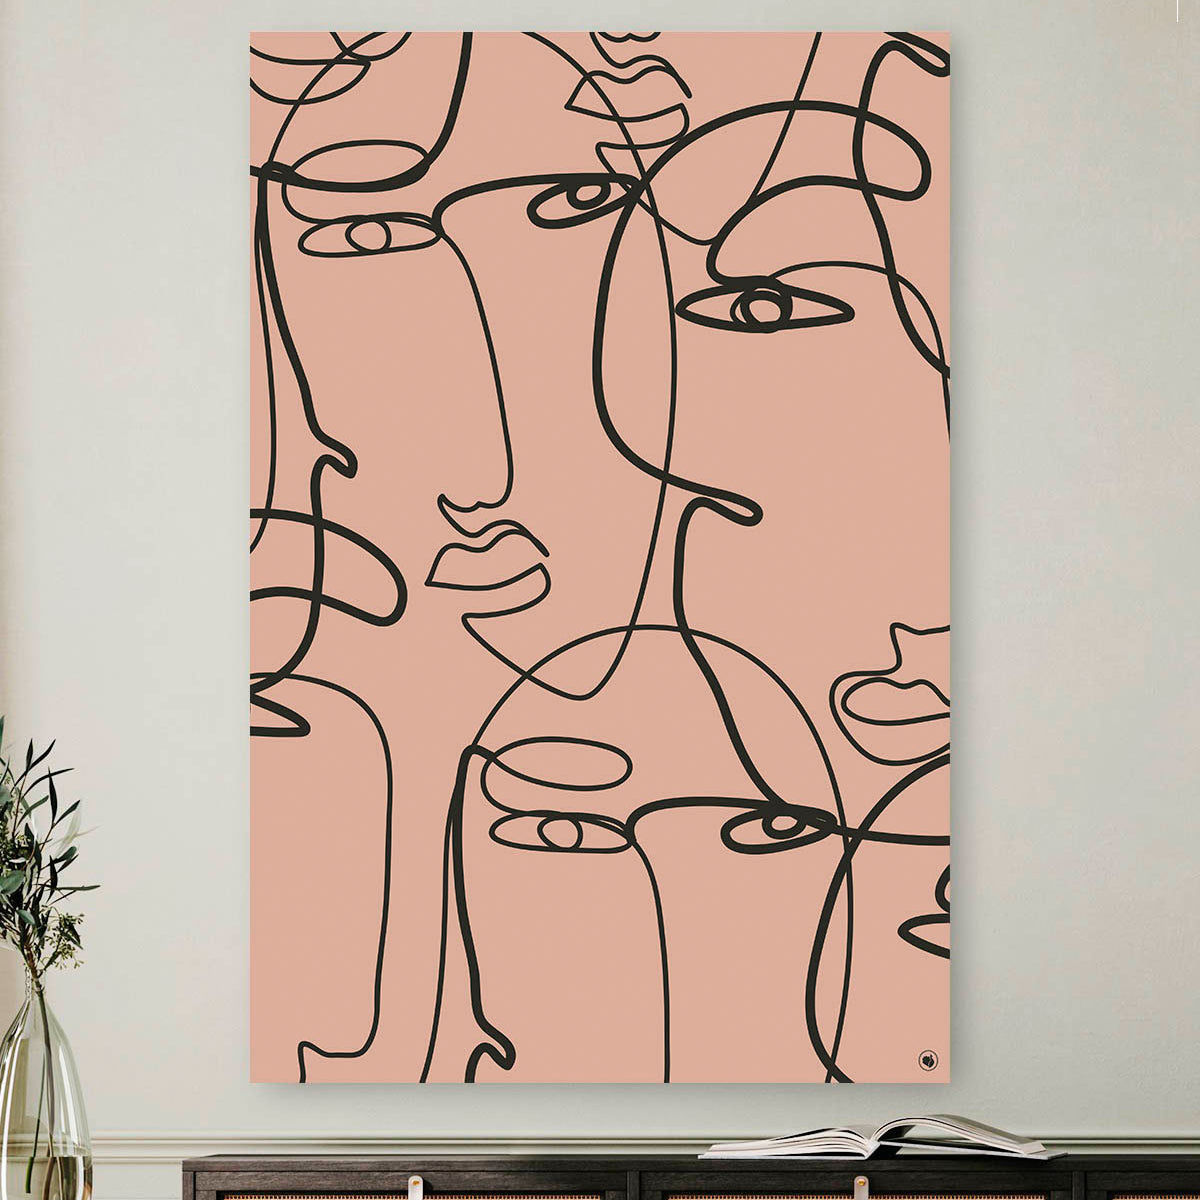 Vierkante wanddecoratie met meerdere gezichten in moderne kunst erop.